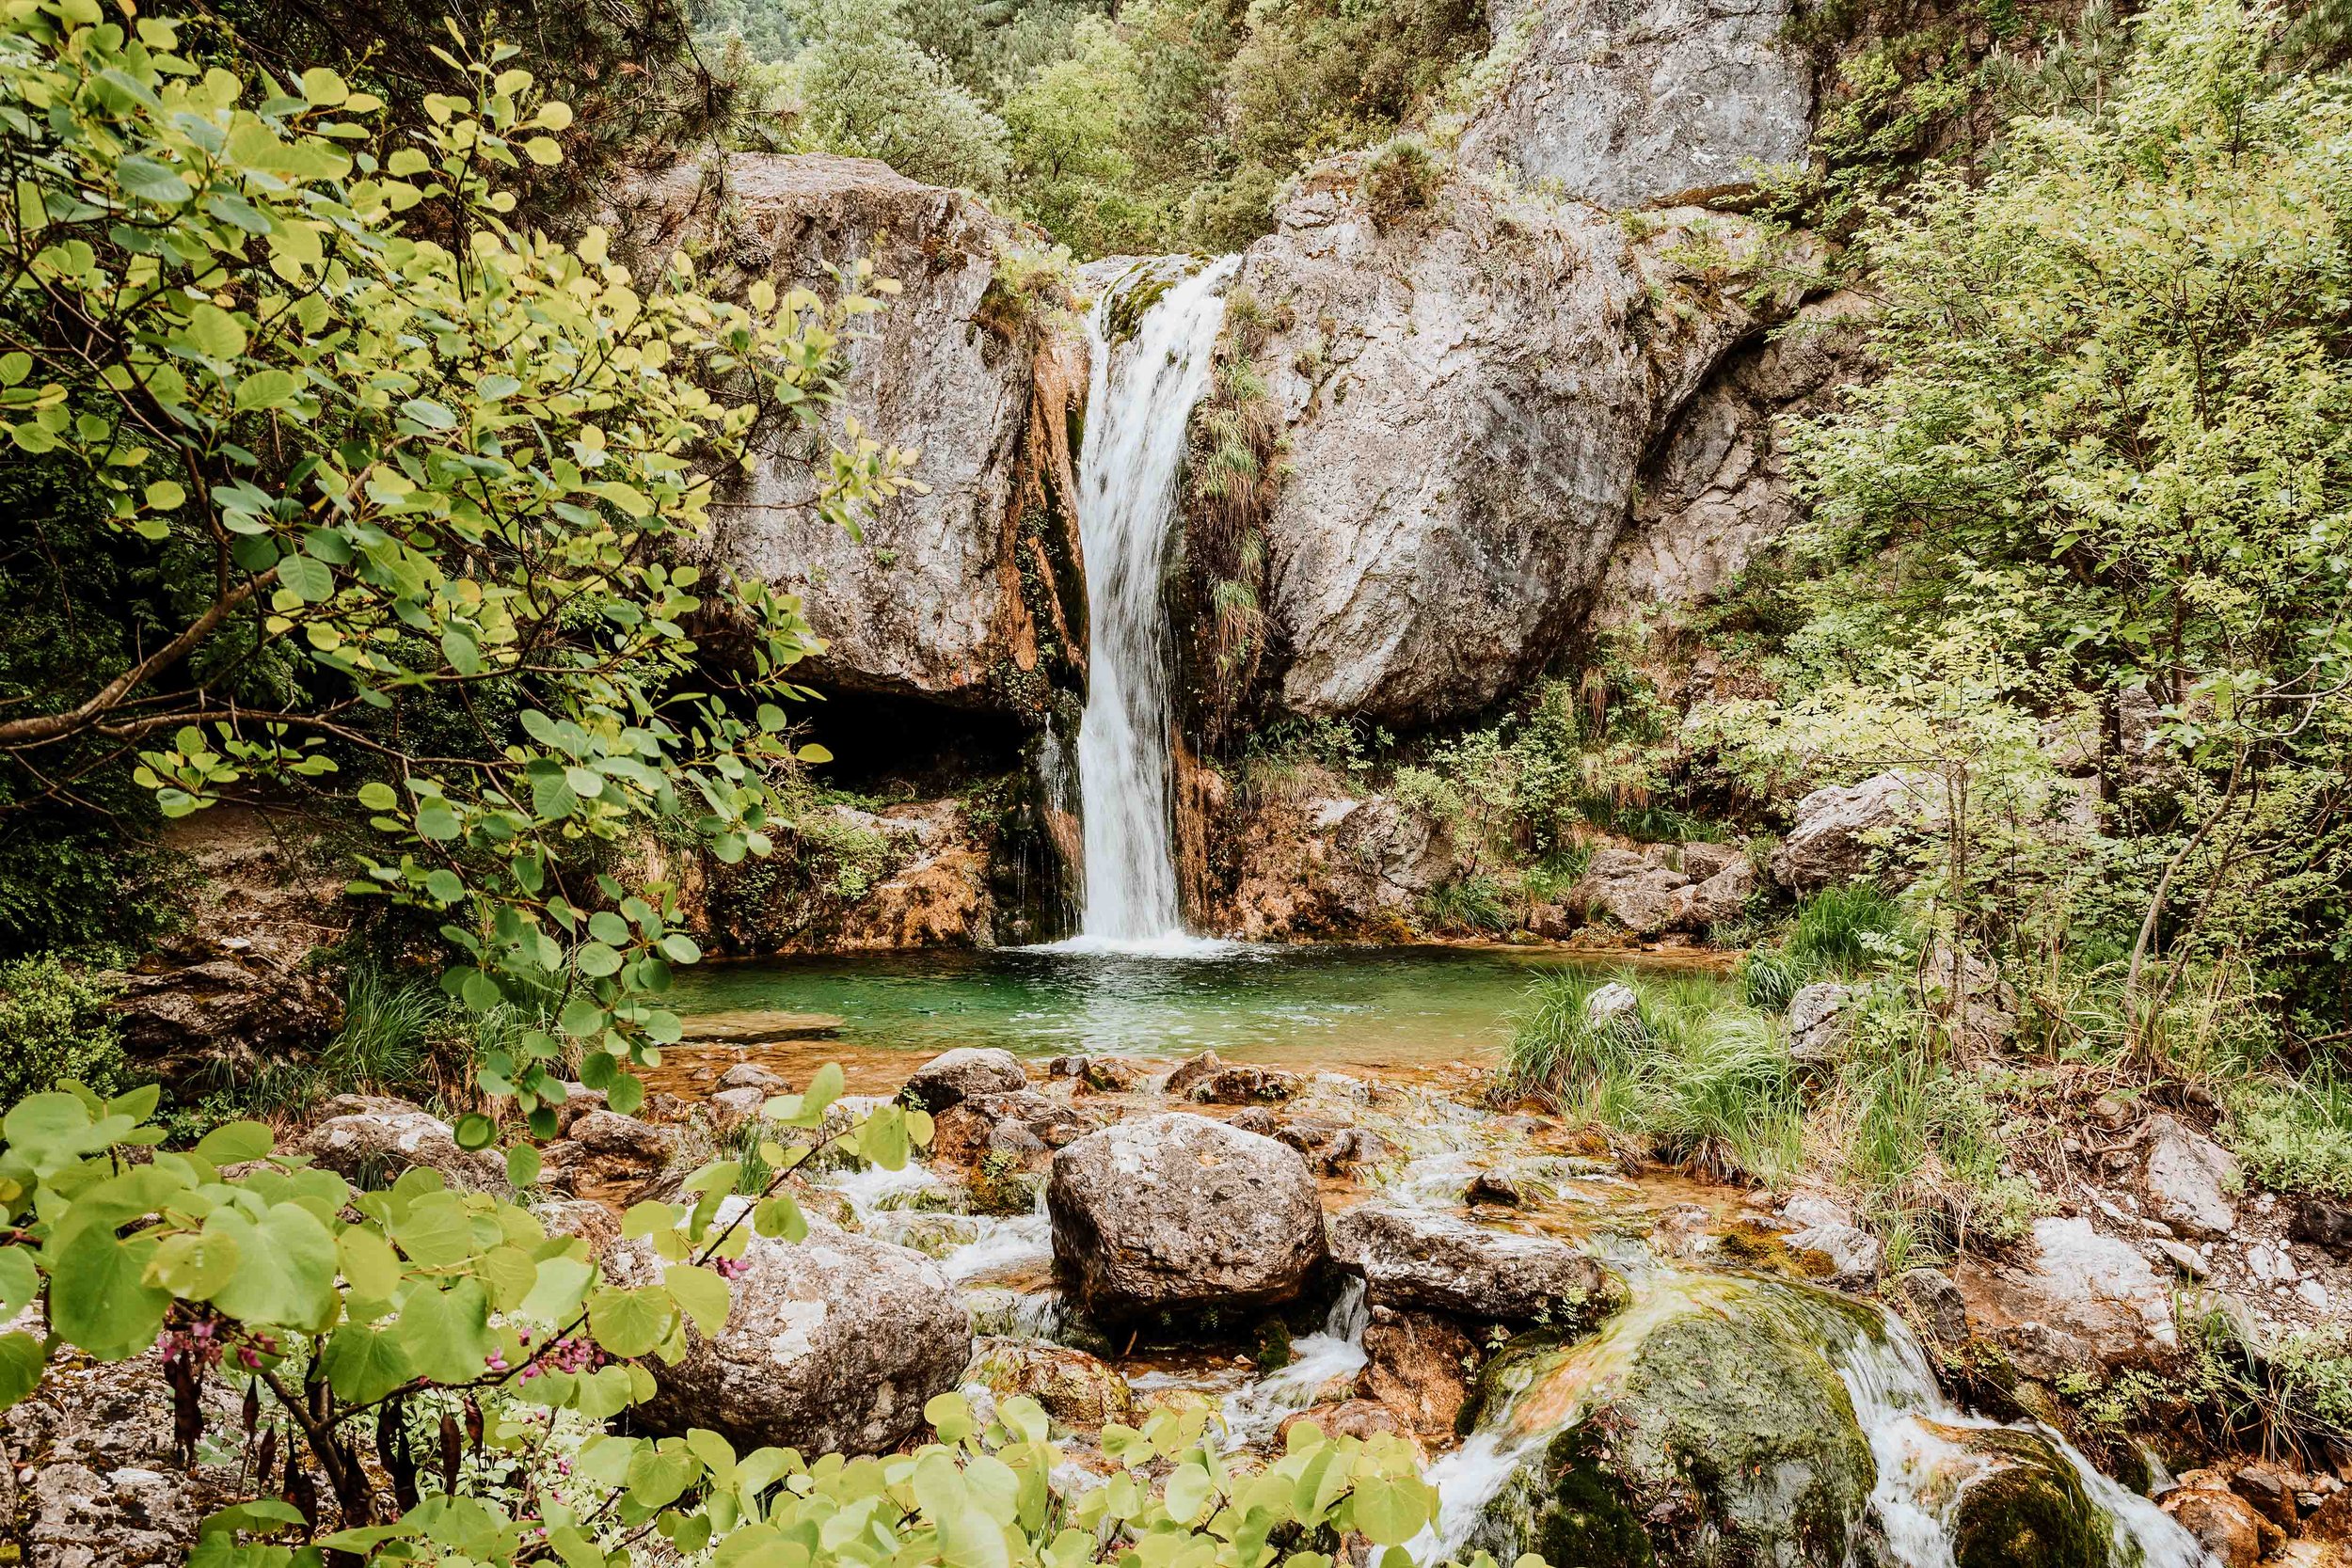 Waterfall in mount olympus on thessaloniki 3 days in thessaloniki